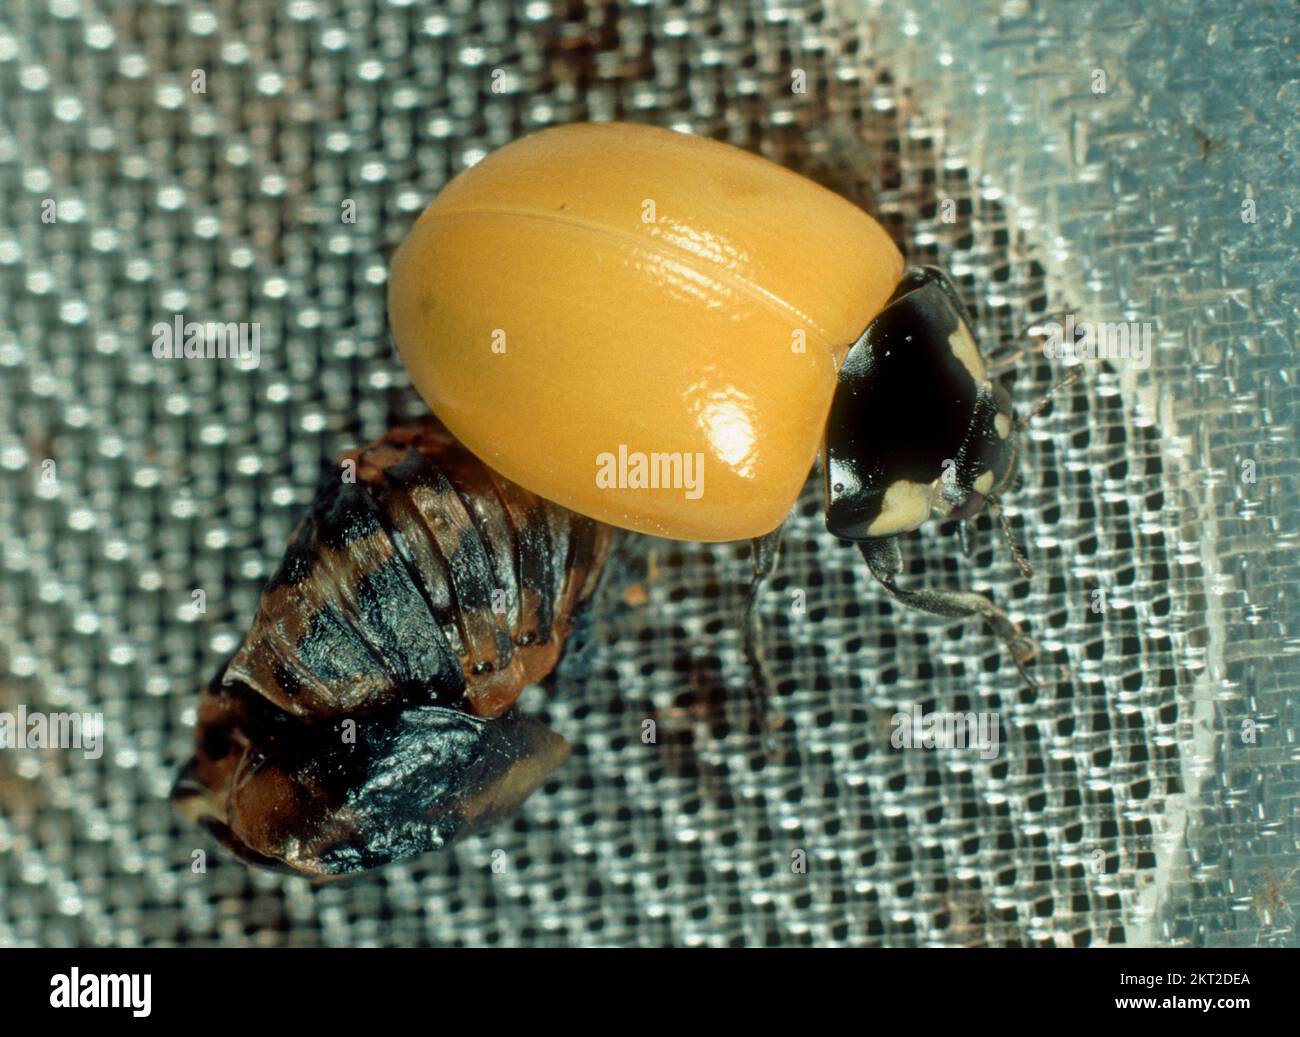 Mariquita de siete manchas (Coccinella septumpunctata) adulto amarillo antes de que se desarrolle coloración de manchas después de salir de la pupa Foto de stock